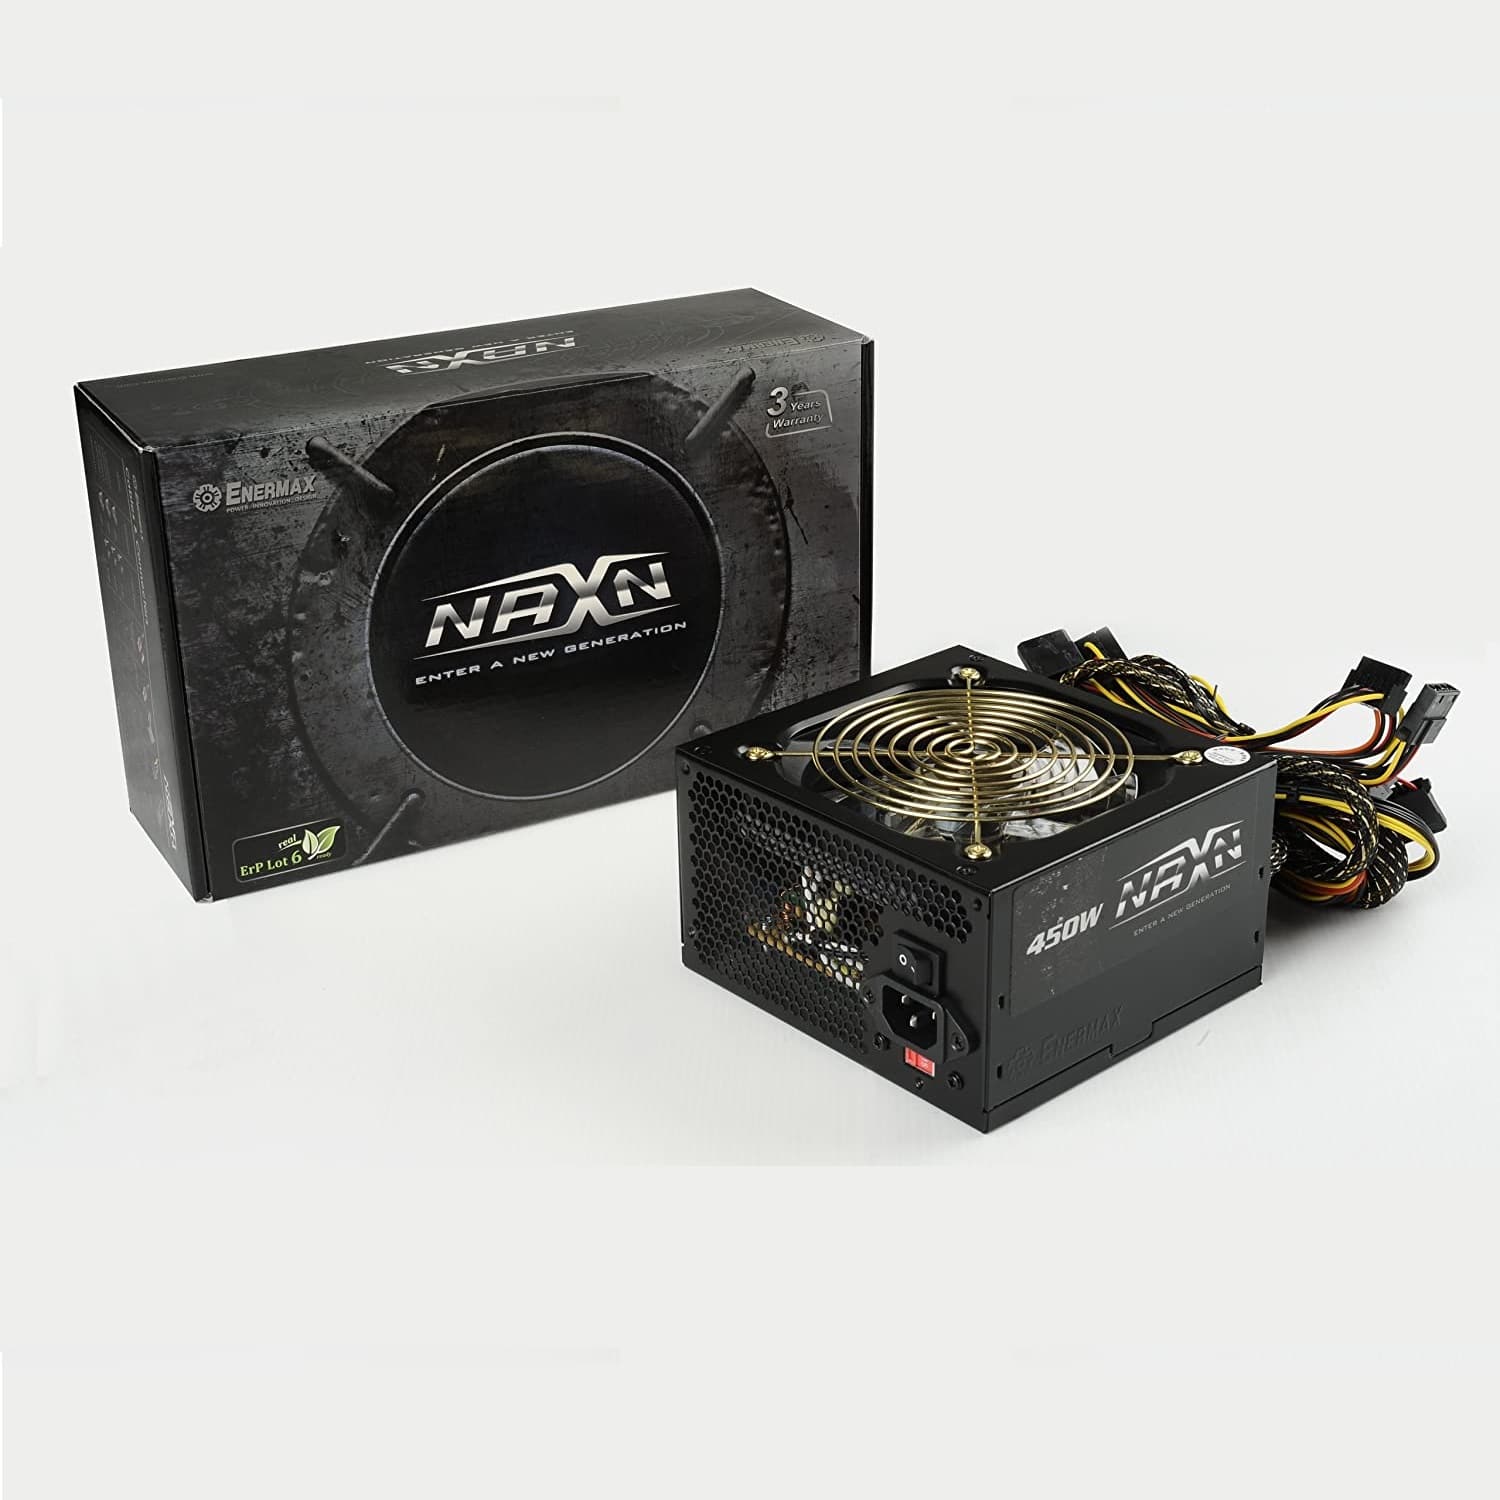  منبع تغذیه مدل Power Enermax NAXN 450W